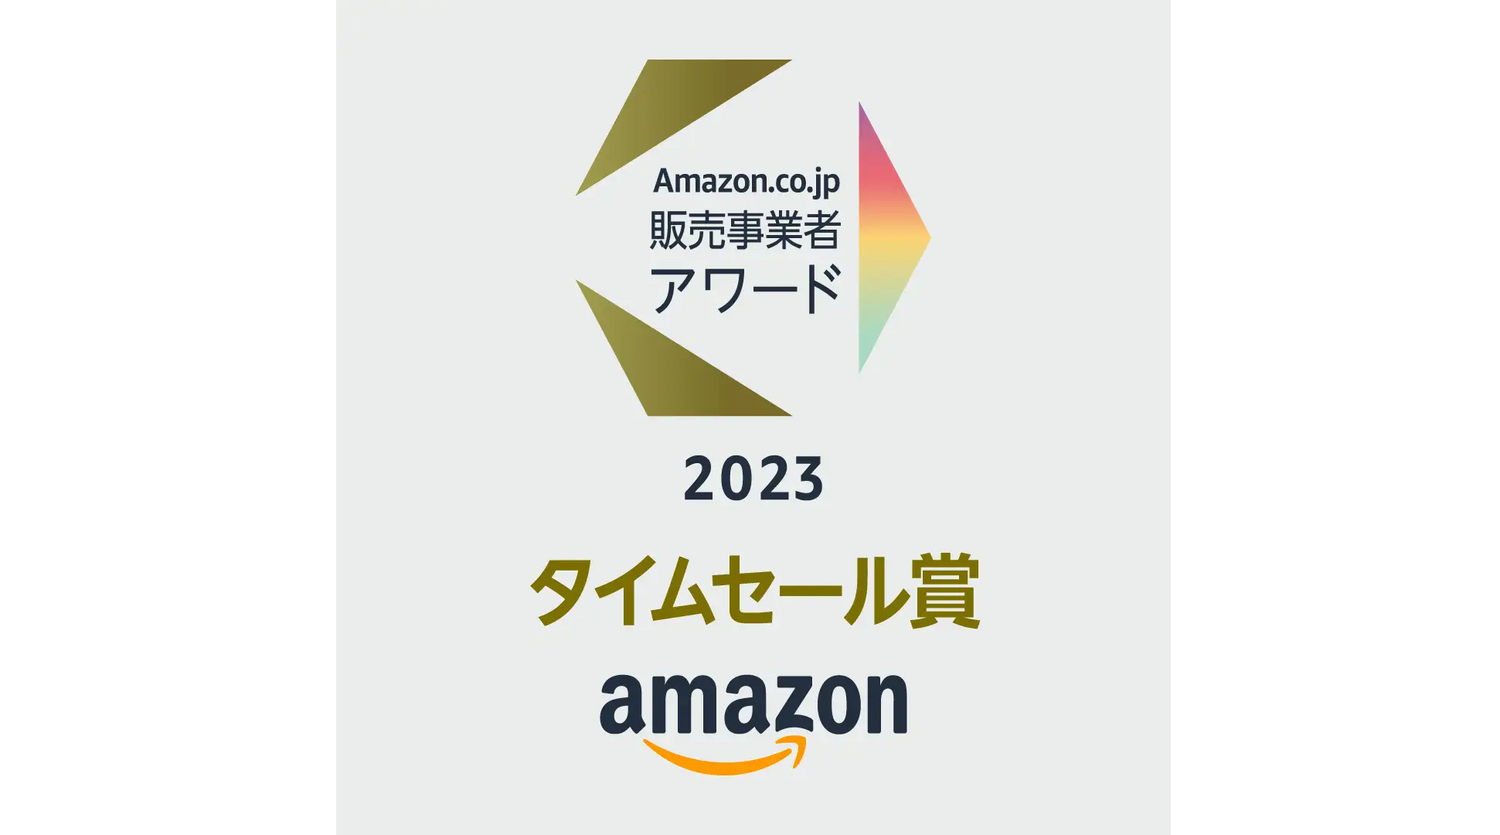 「Amazon.co.jp販売事業者アワード2023」にて「Amazfit」が「タイムセール賞」を受賞